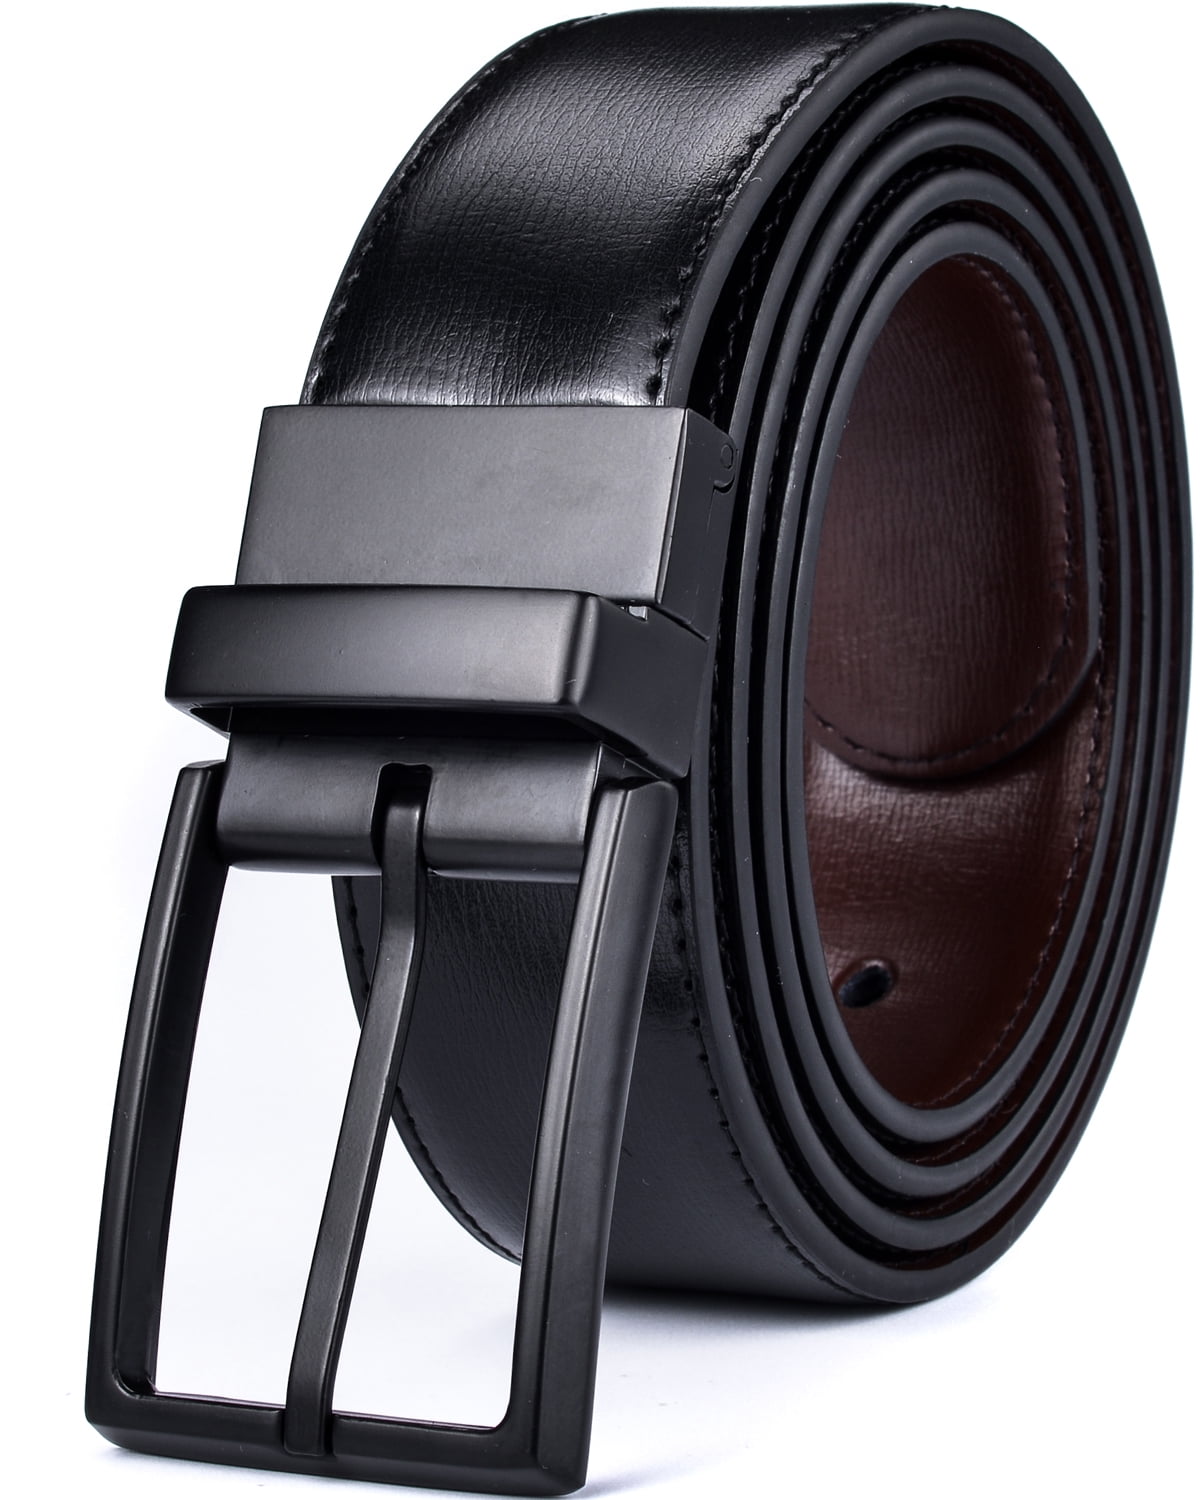 Beltox Fine Men's Dress Belt Leather Reversible 1.34